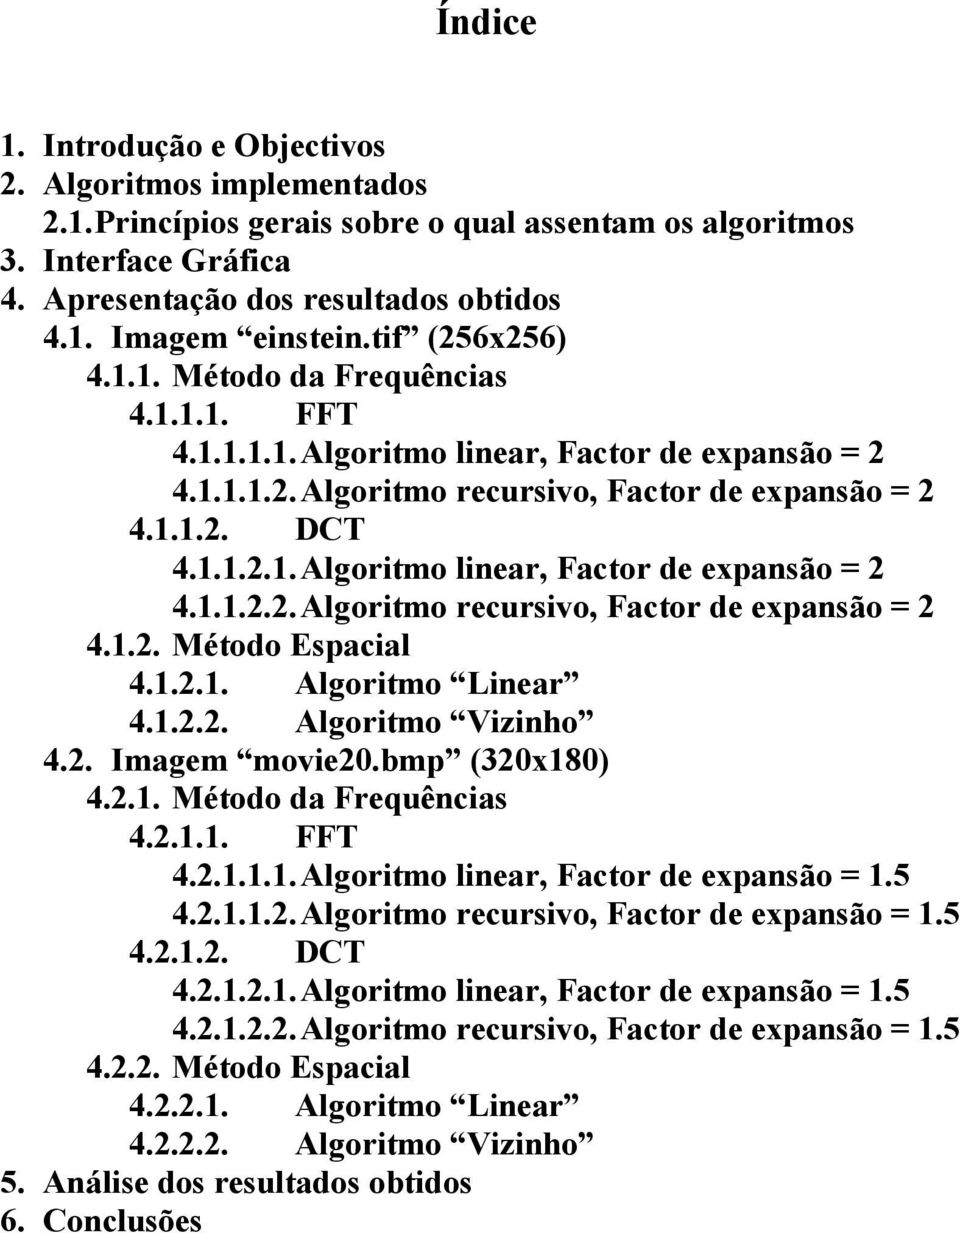 1.2.1. Algoritmo Linear 4.1.2.2. Algoritmo Vizinho 4.2. Imagem movie20.bmp (320x180) 4.2.1. Método da Frequências 4.2.1.1. FFT 4.2.1.1.1. Algoritmo linear, Factor de expansão = 1.5 4.2.1.1.2. Algoritmo recursivo, Factor de expansão = 1.